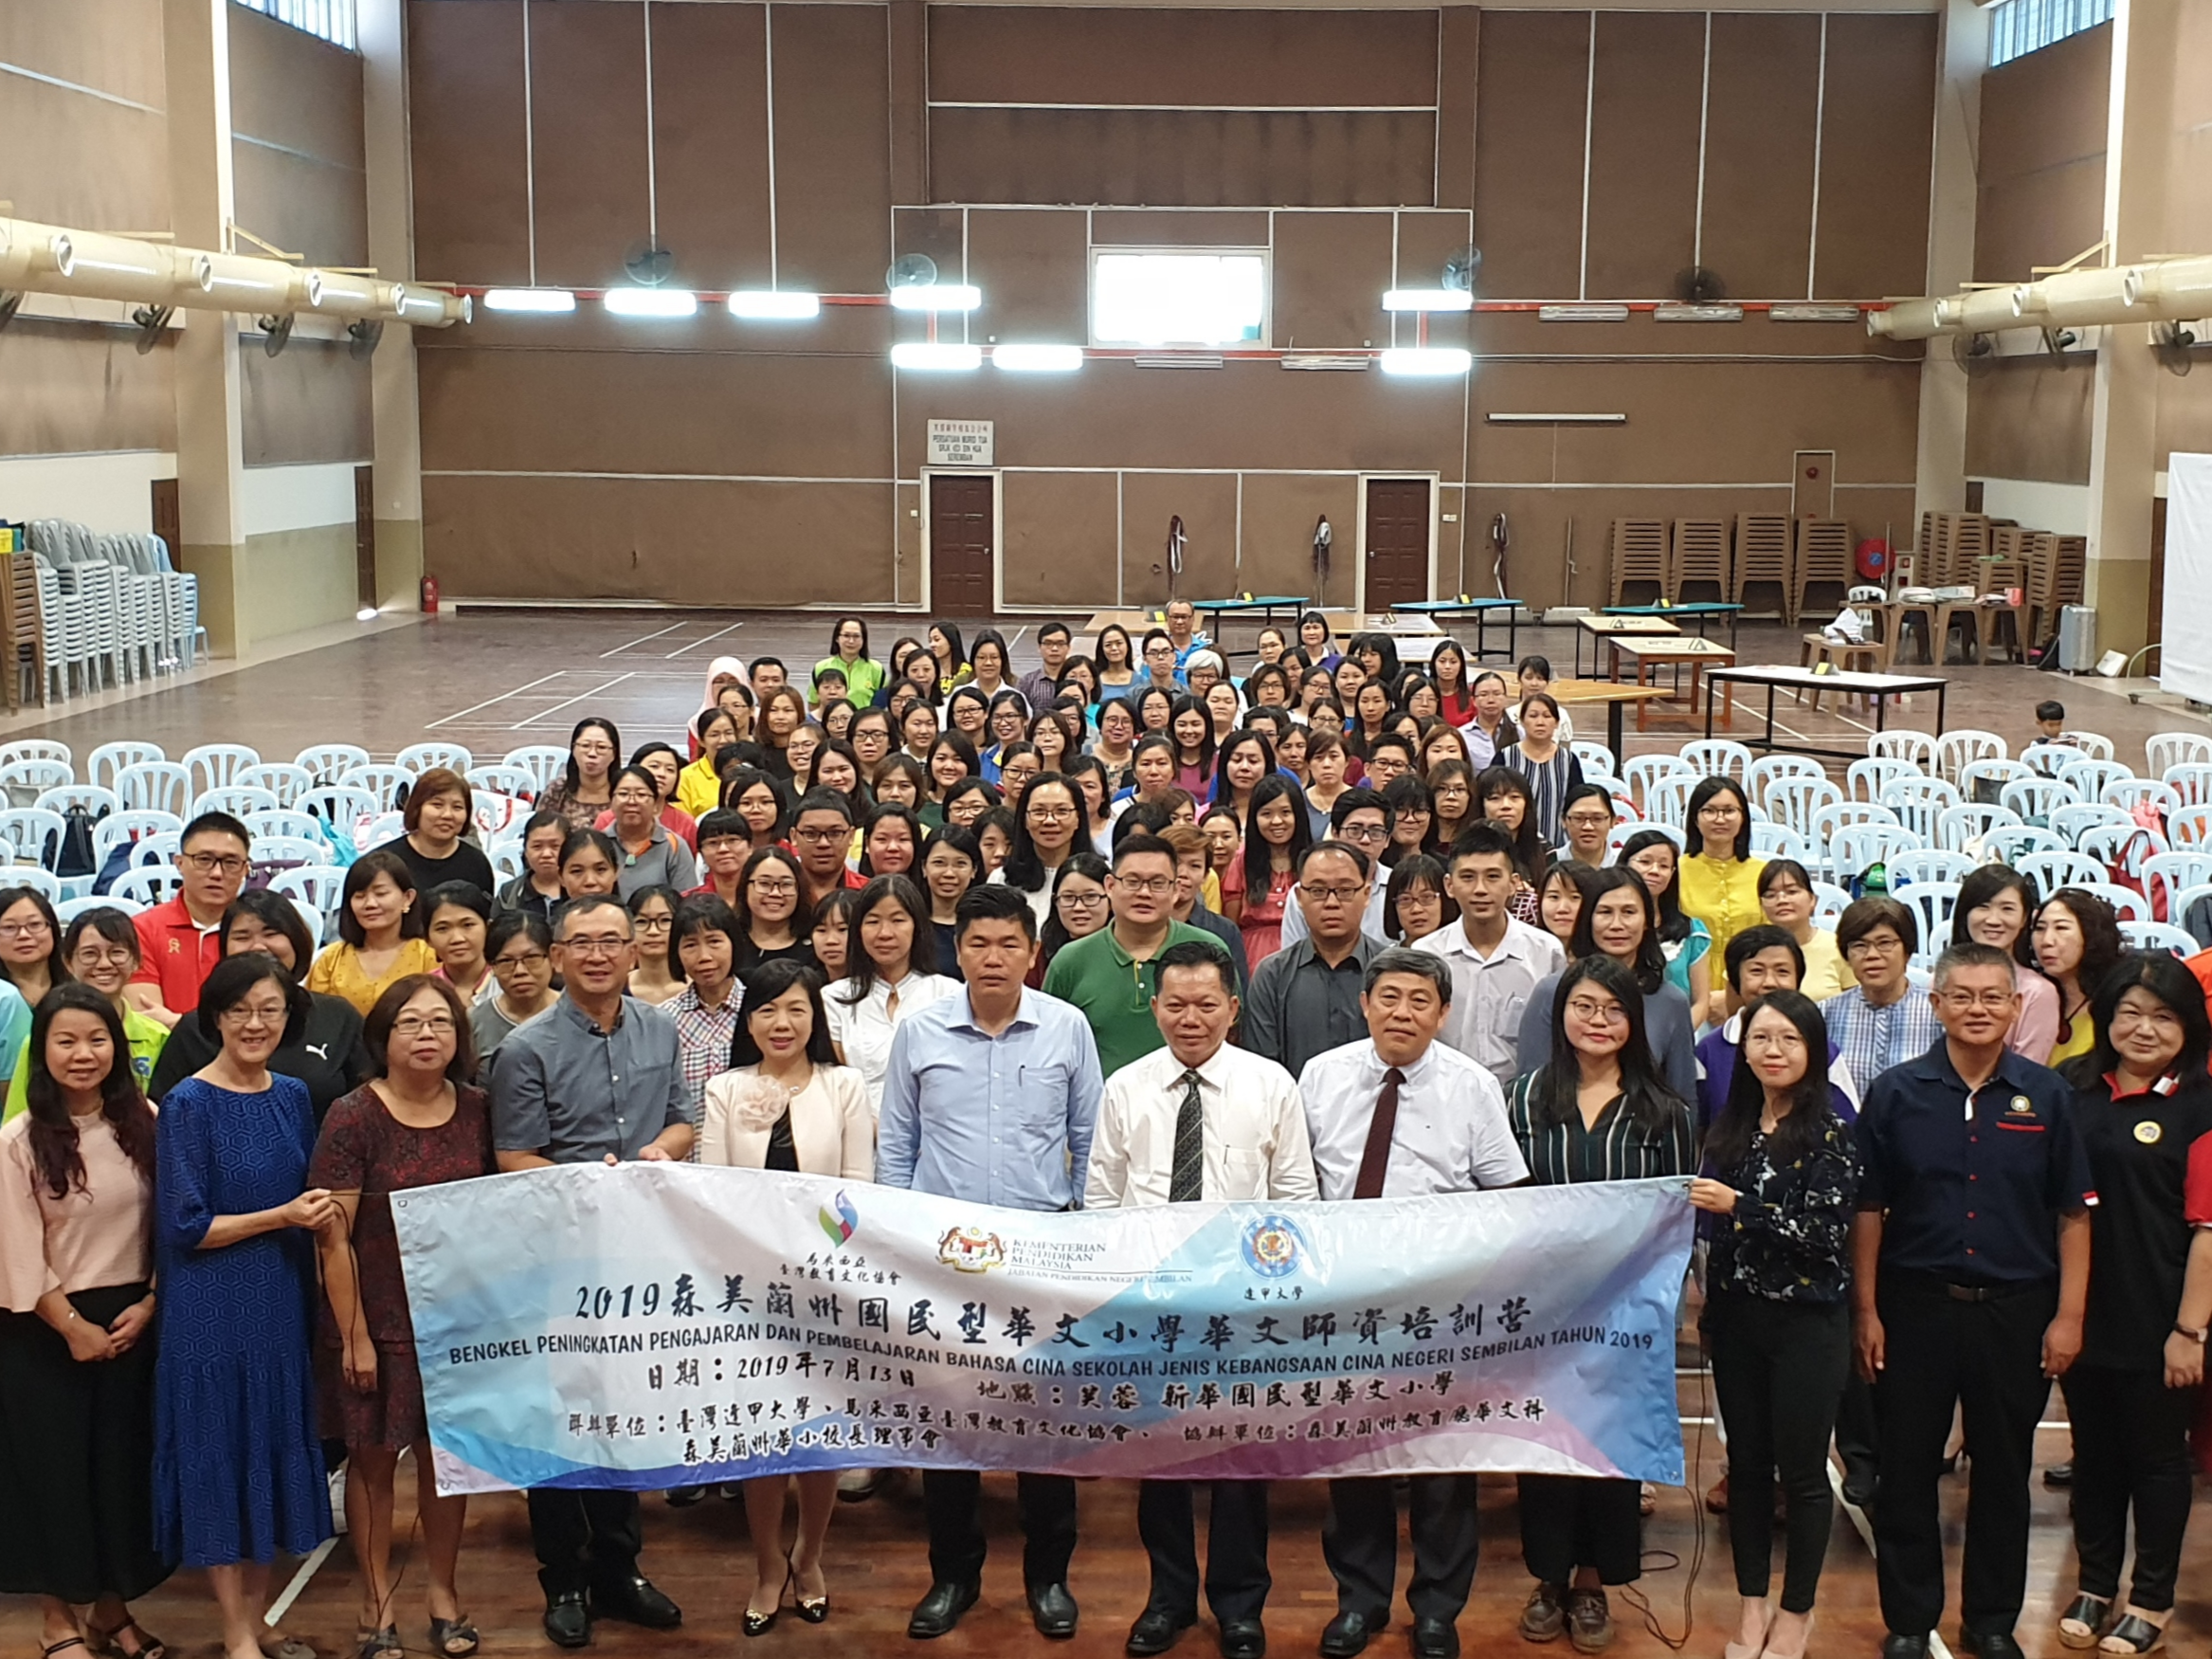 馬來西亞森美蘭州國民型華文小學2019華文師資培訓課程圖片